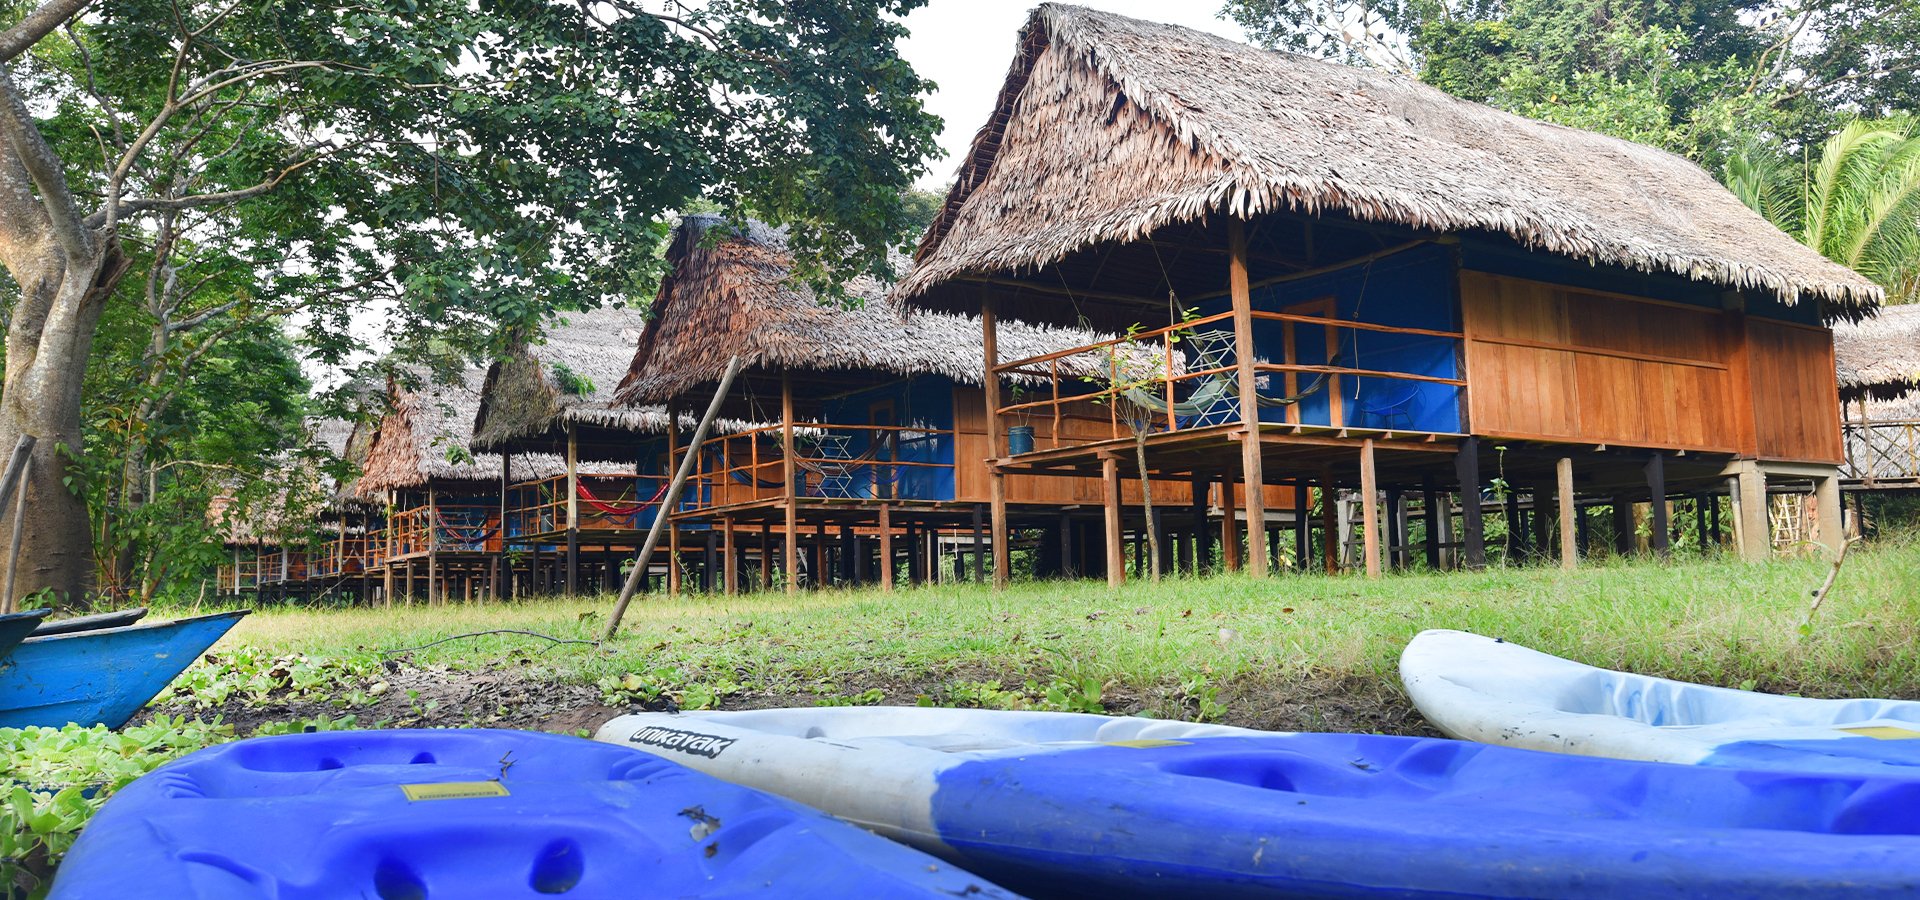 Muyuna Lodge (Iquitos Amazon Jungle Lodge)